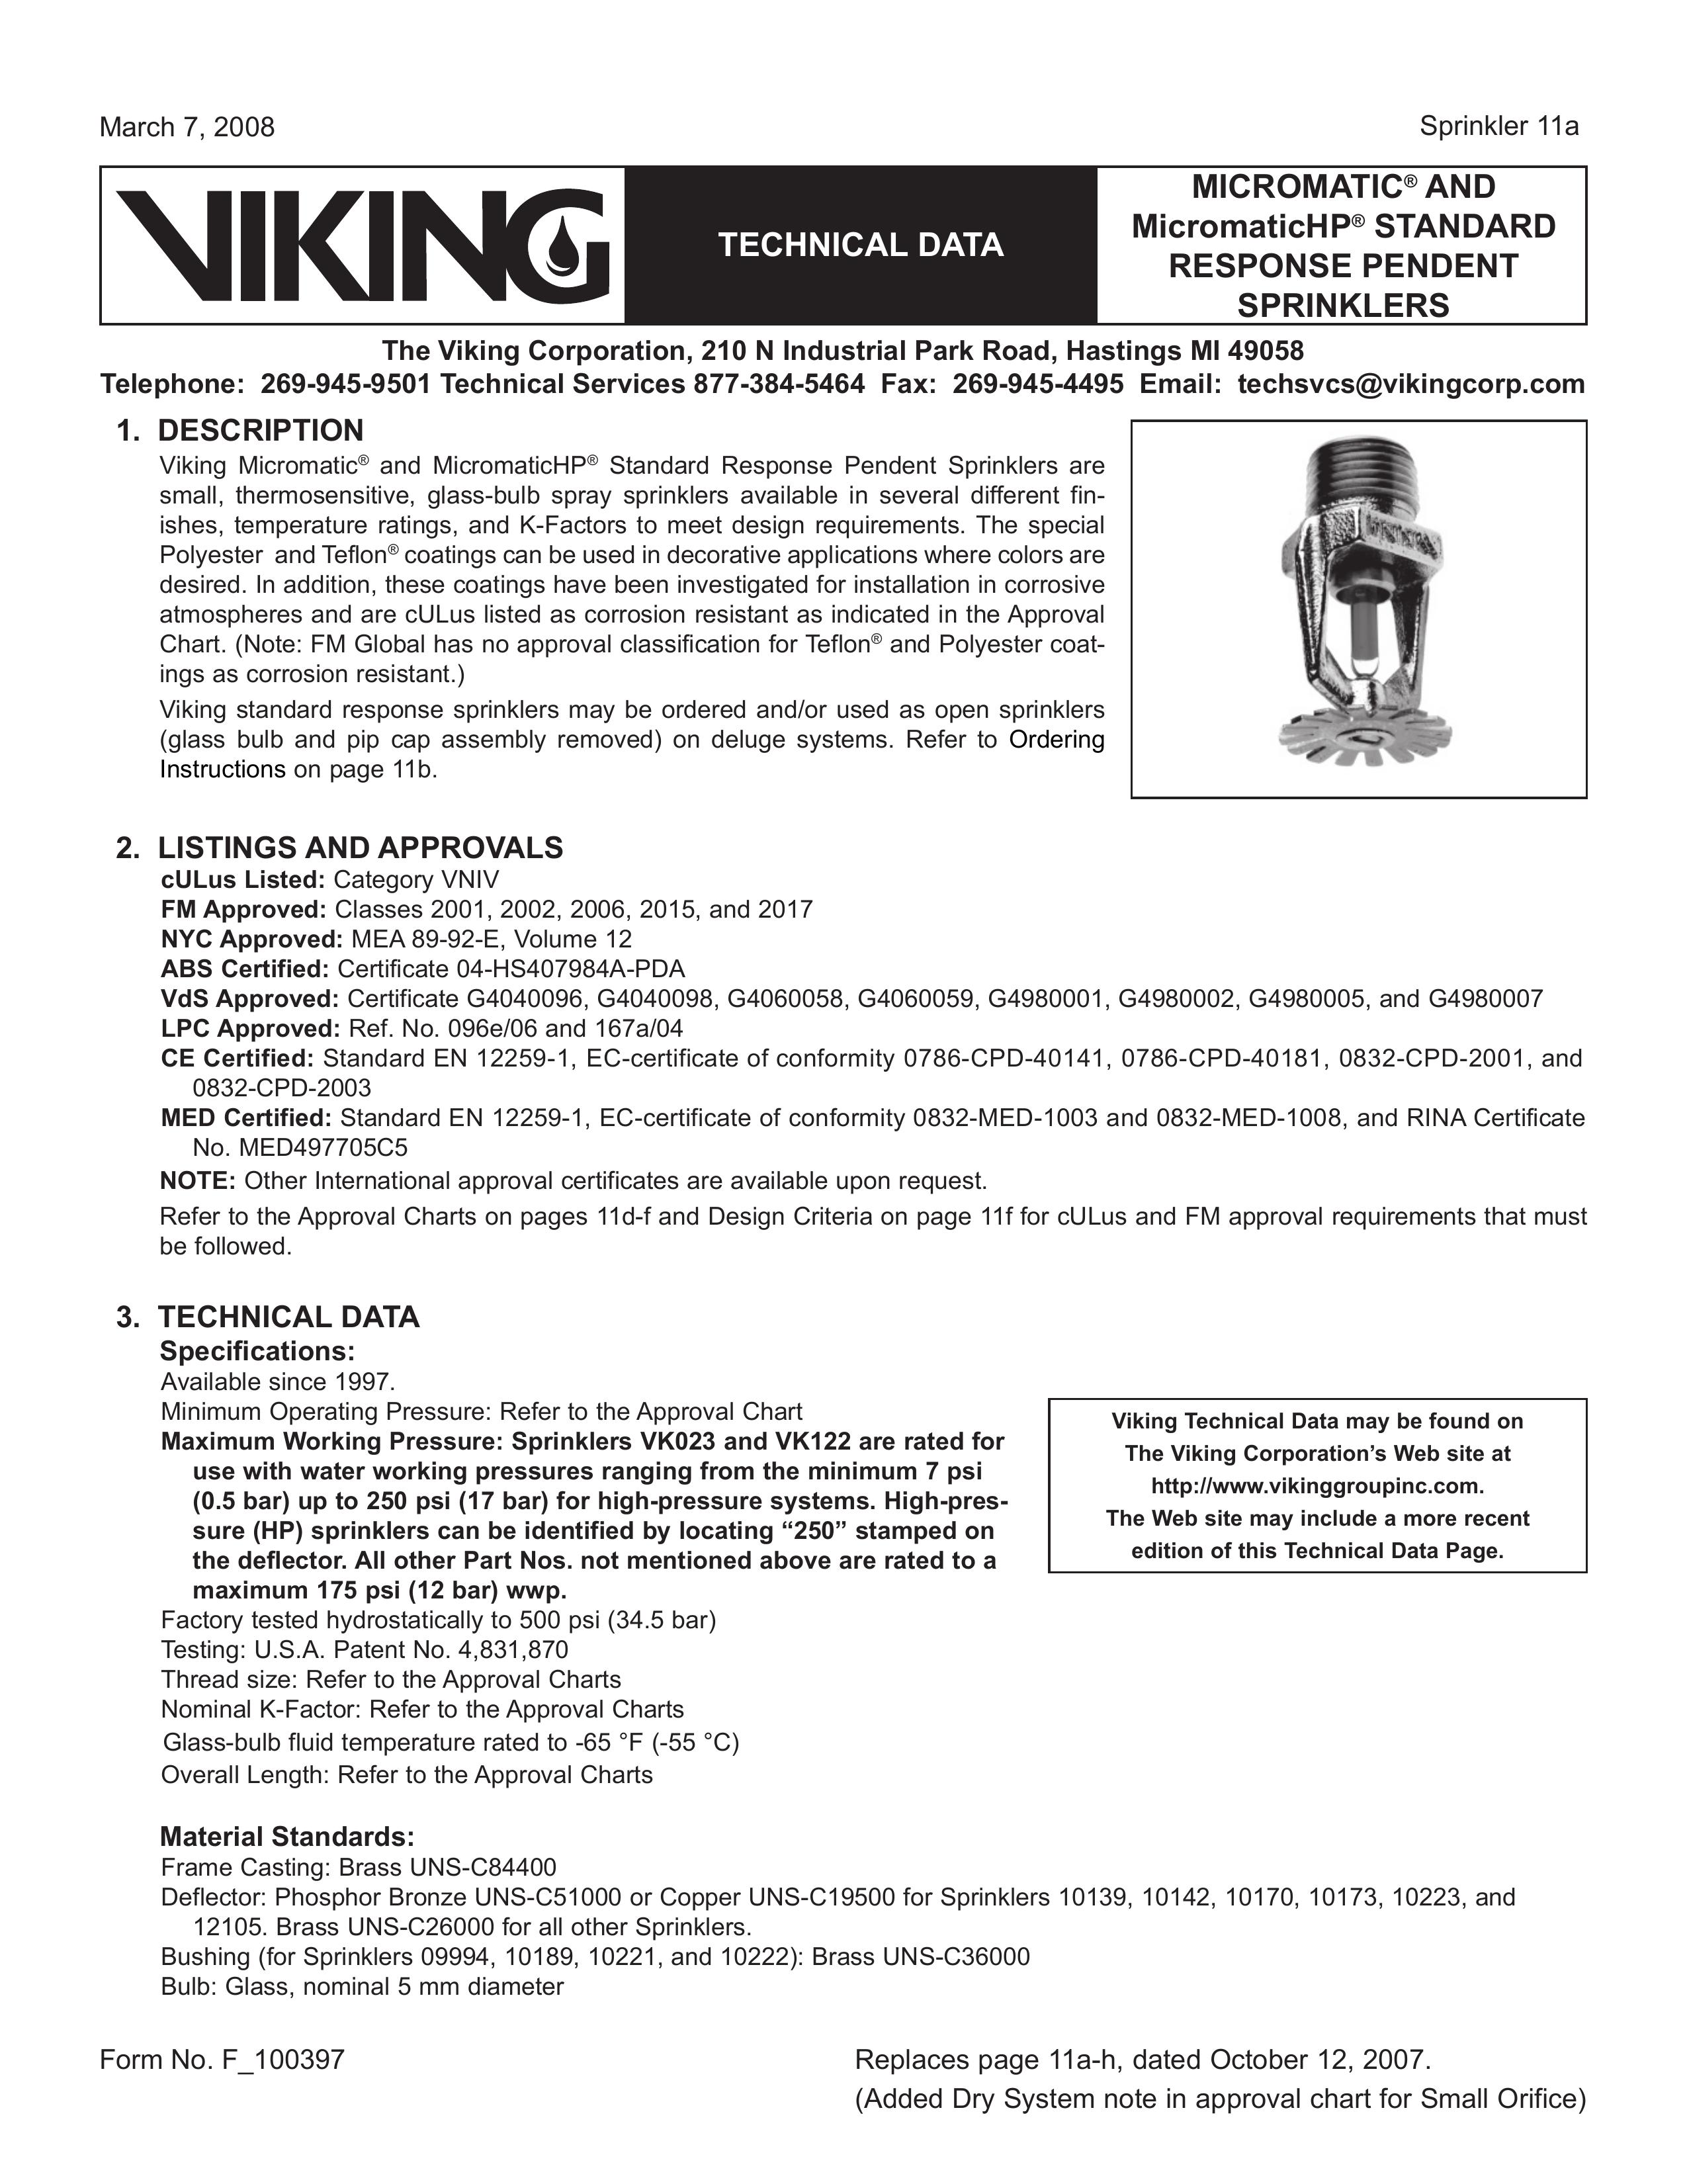 Viking Sprinkler 11a Sprinkler User Manual